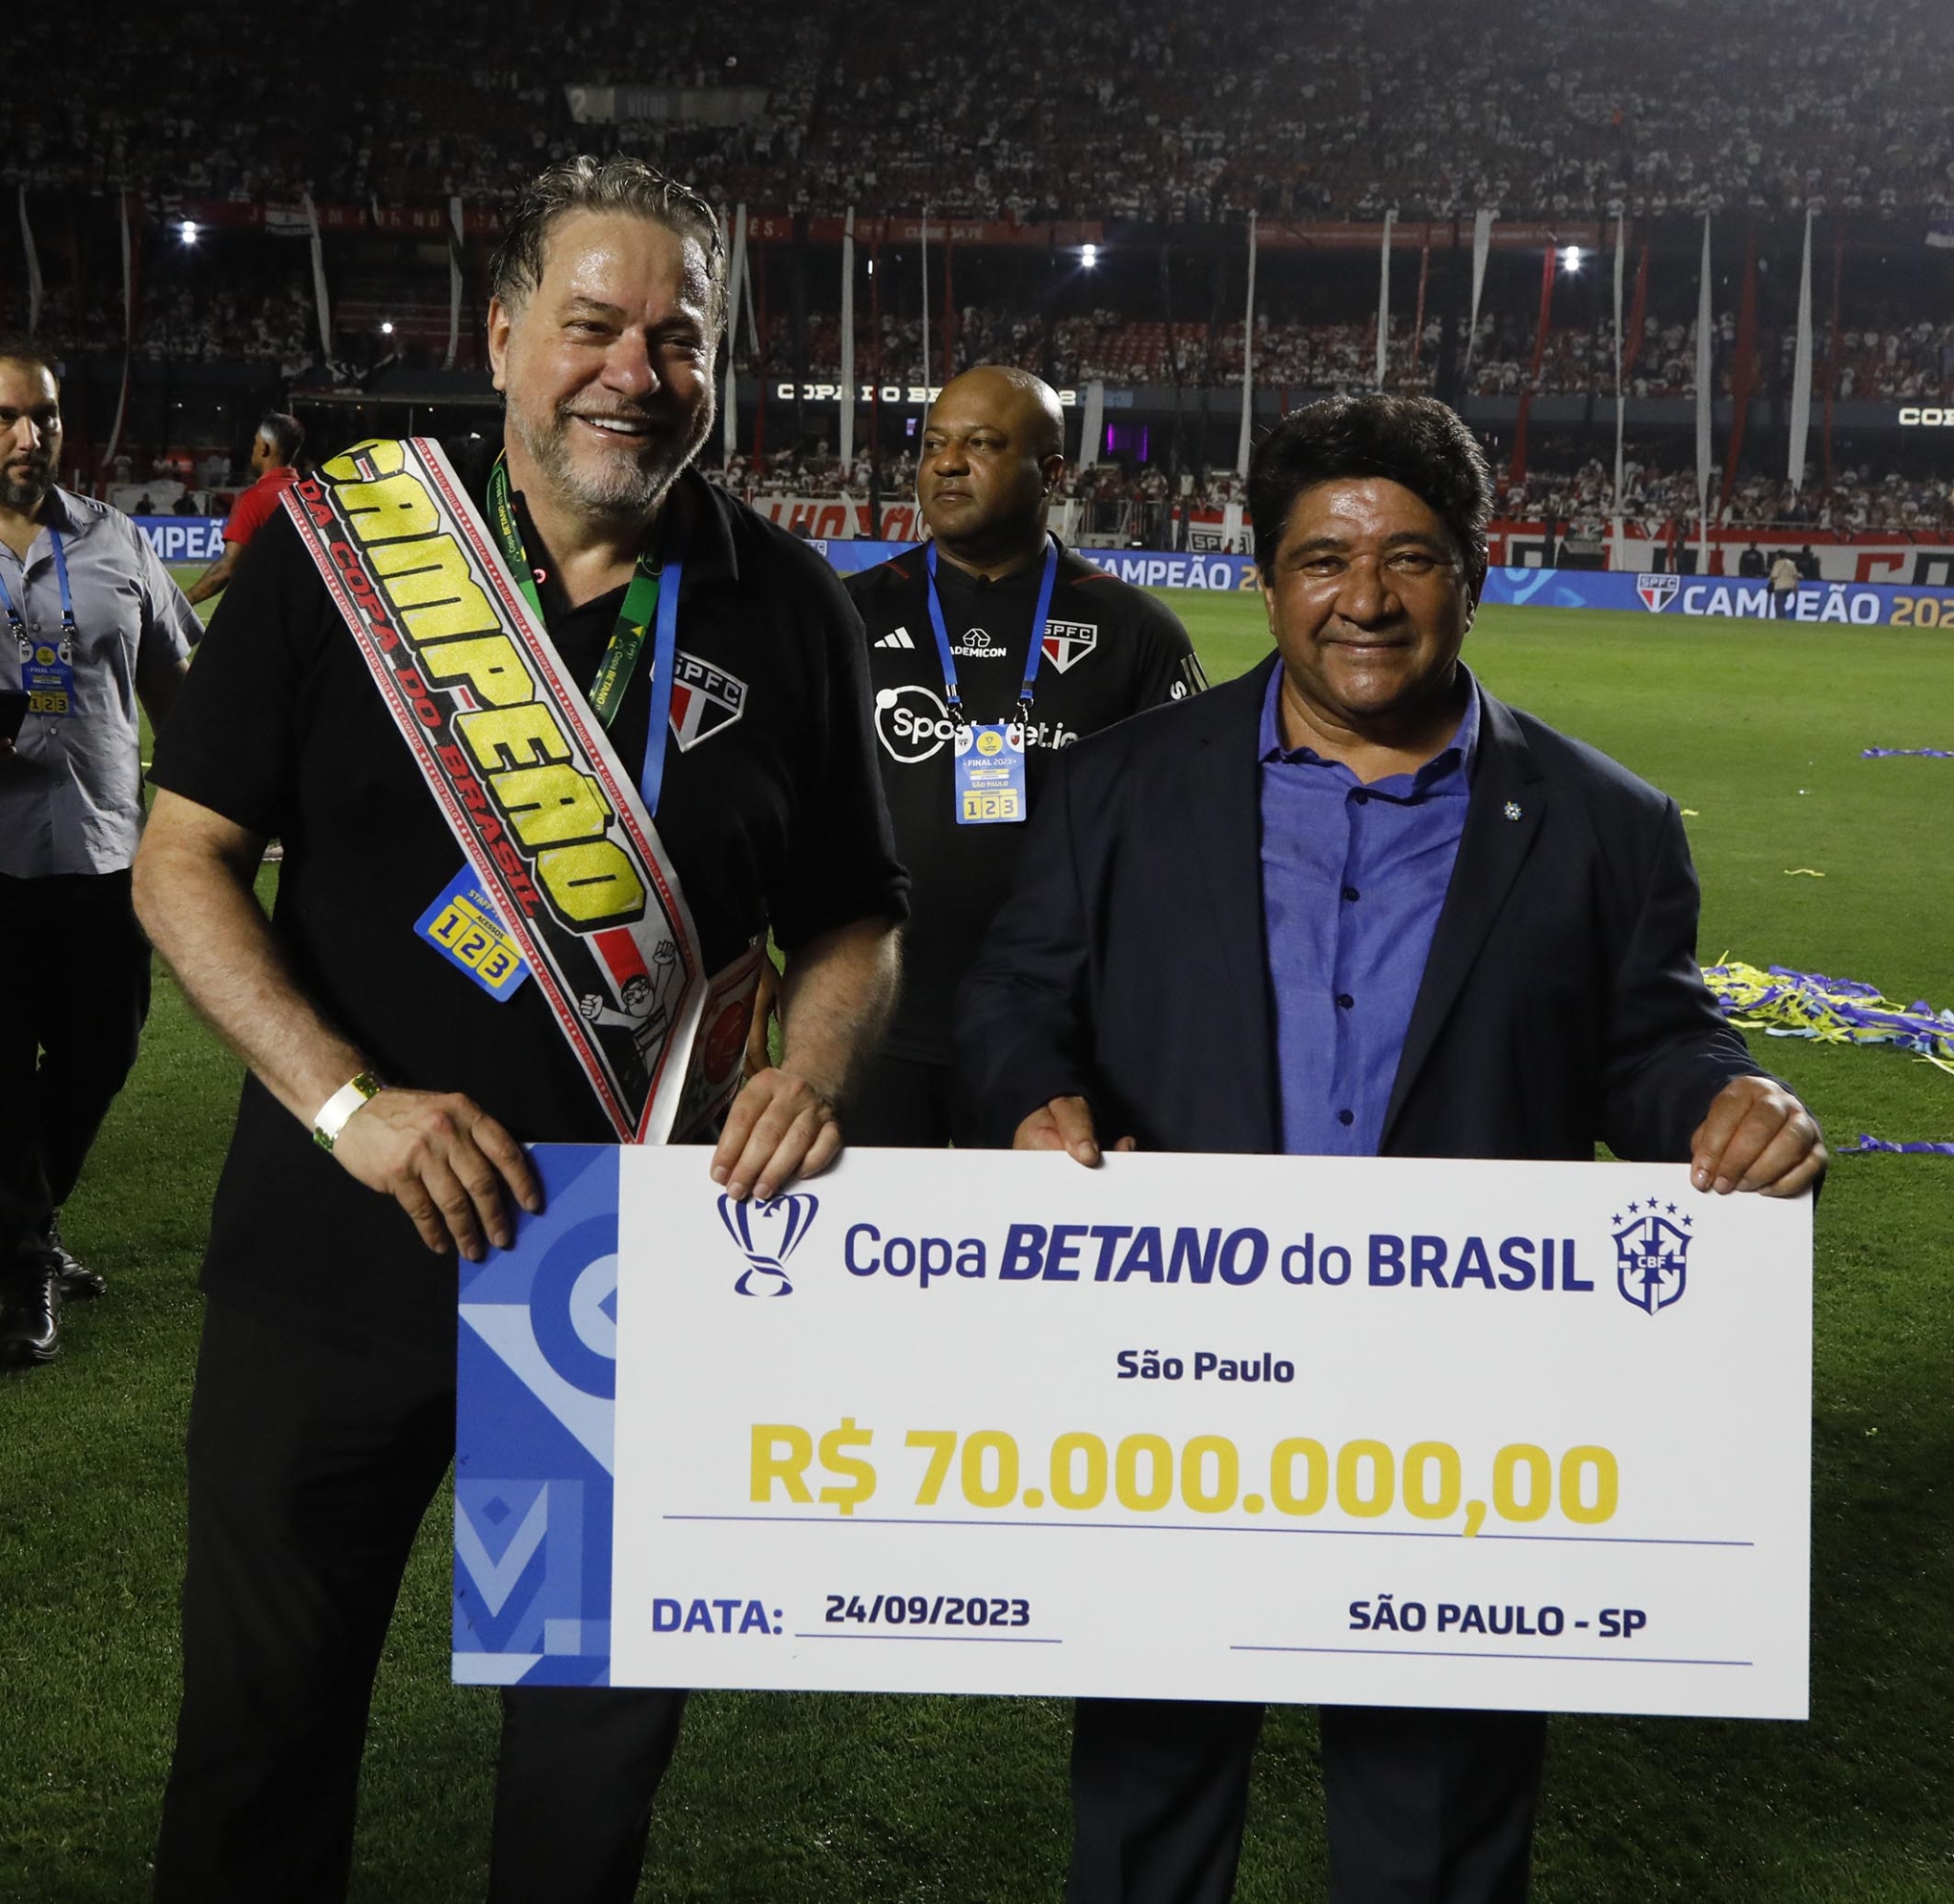 Premiação da Copa do Brasil 2023: quanto vale a vaga na final?